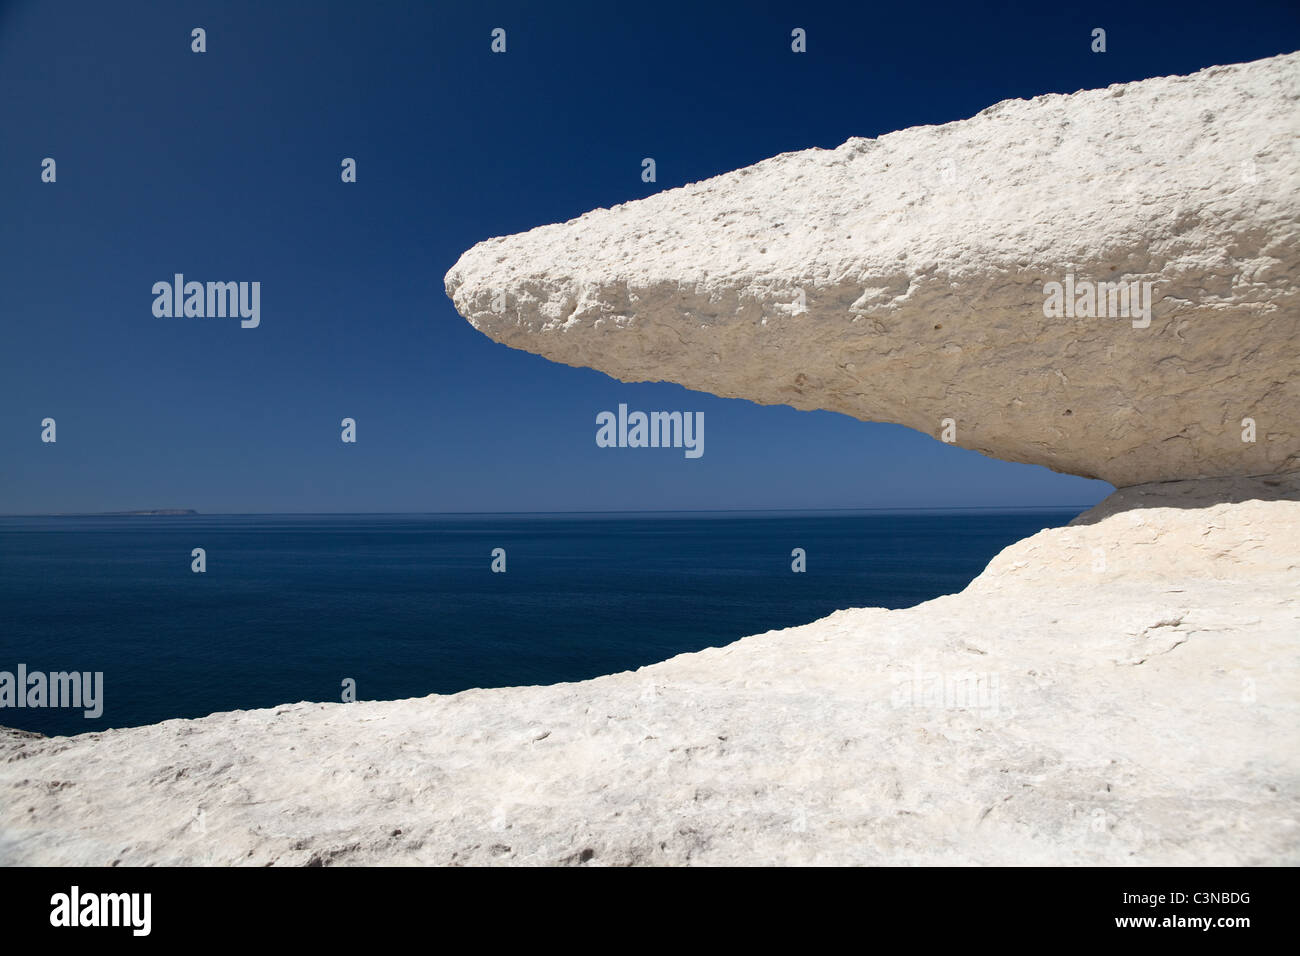 erodierte Kreide Felsen Detail weißen Stein Blau Himmel und Meer schöne Hintergrund-Erosion der Felsen an der Küste Stockfoto